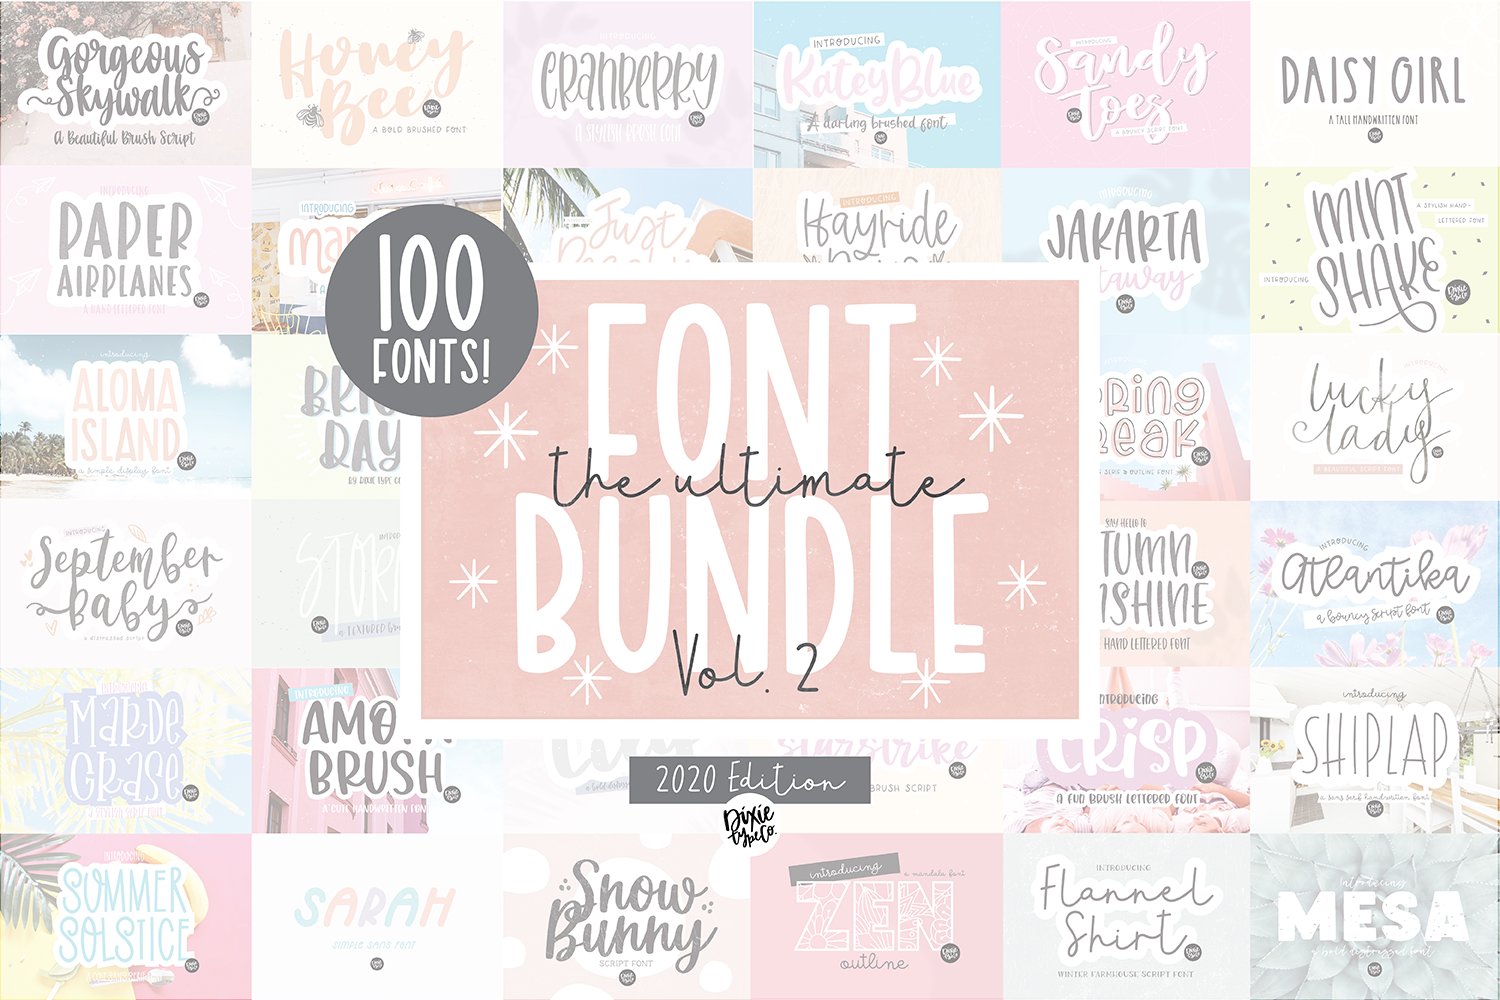 100 FONTS - ULTIMATE Font Bundle cover image.